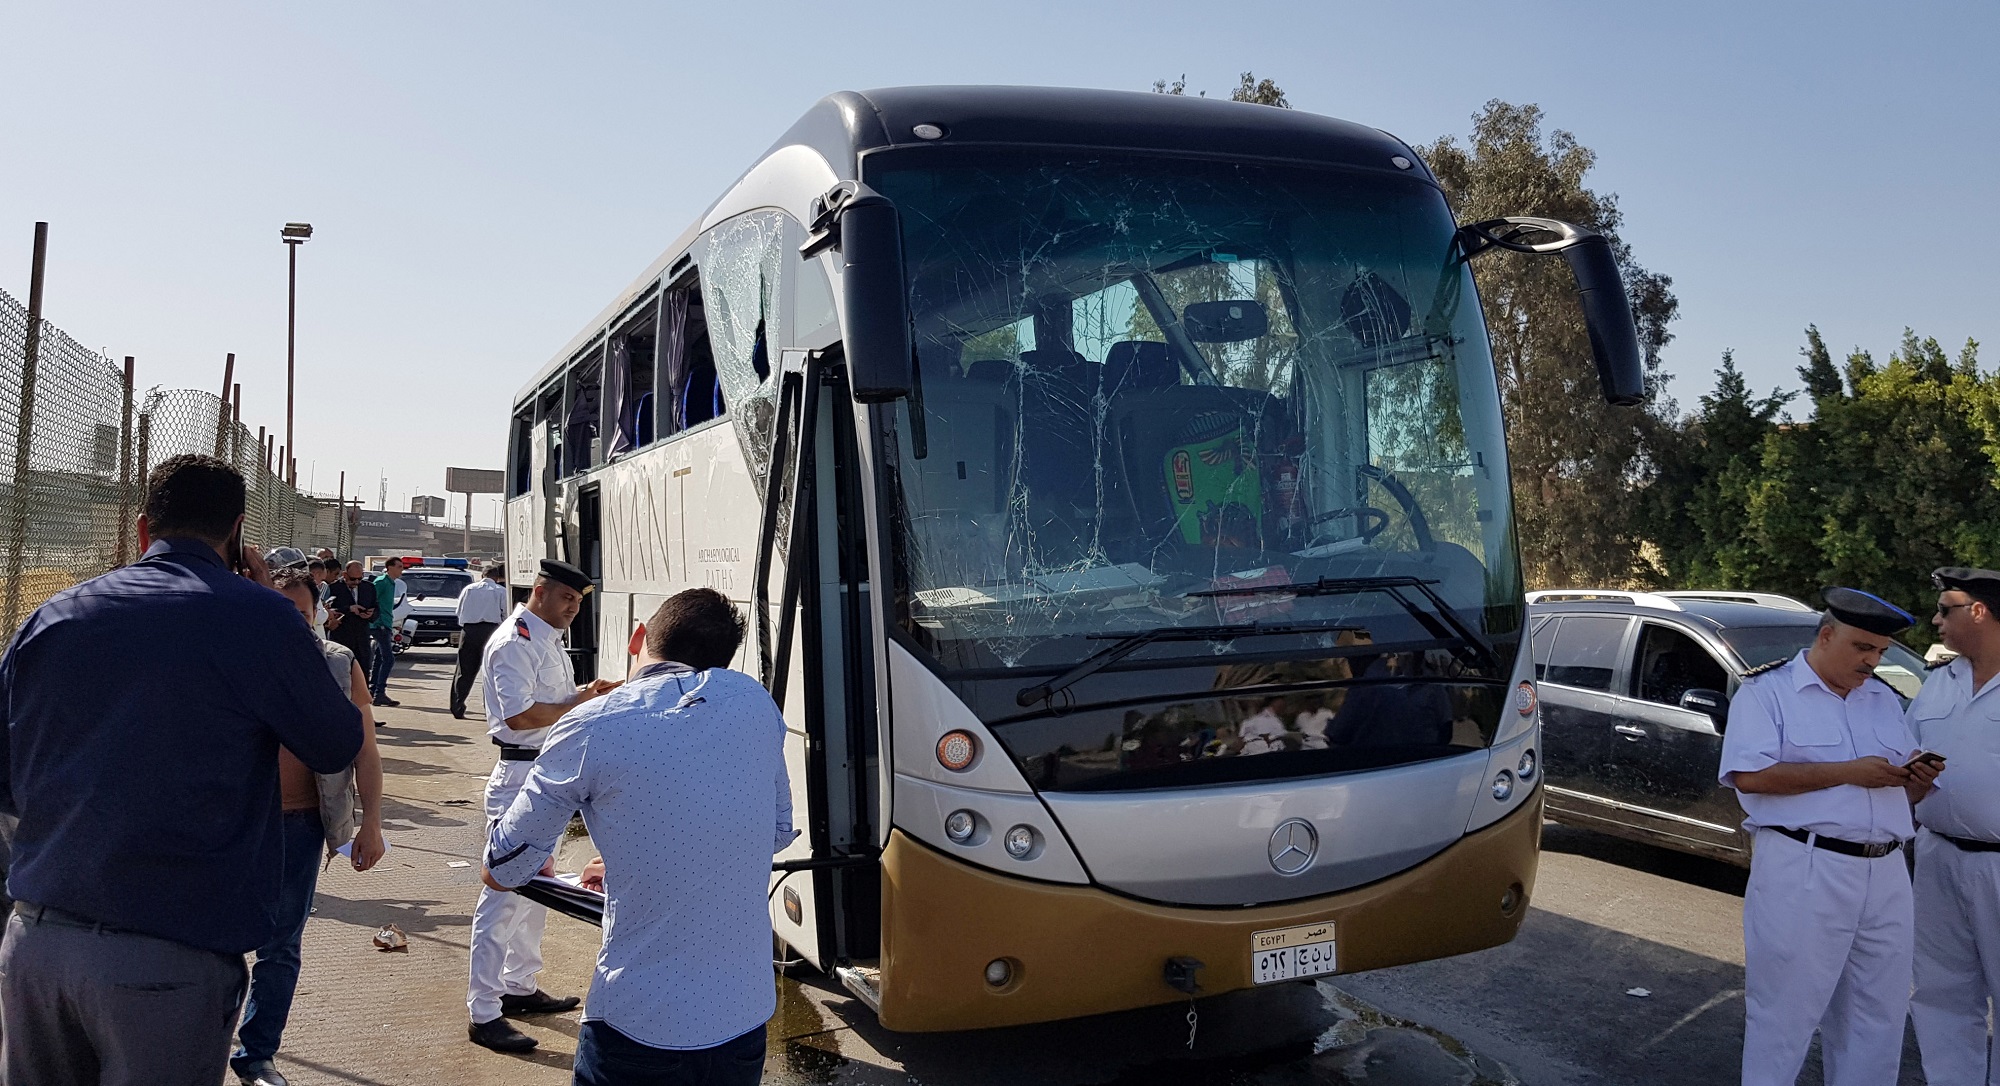 حافلة تعرّضت لأضرار بسبب انفجار بالقرب من المتحف المصري الجديد في الجيزة، 19 مايو 2019. أحمد فهمي/ رويترز